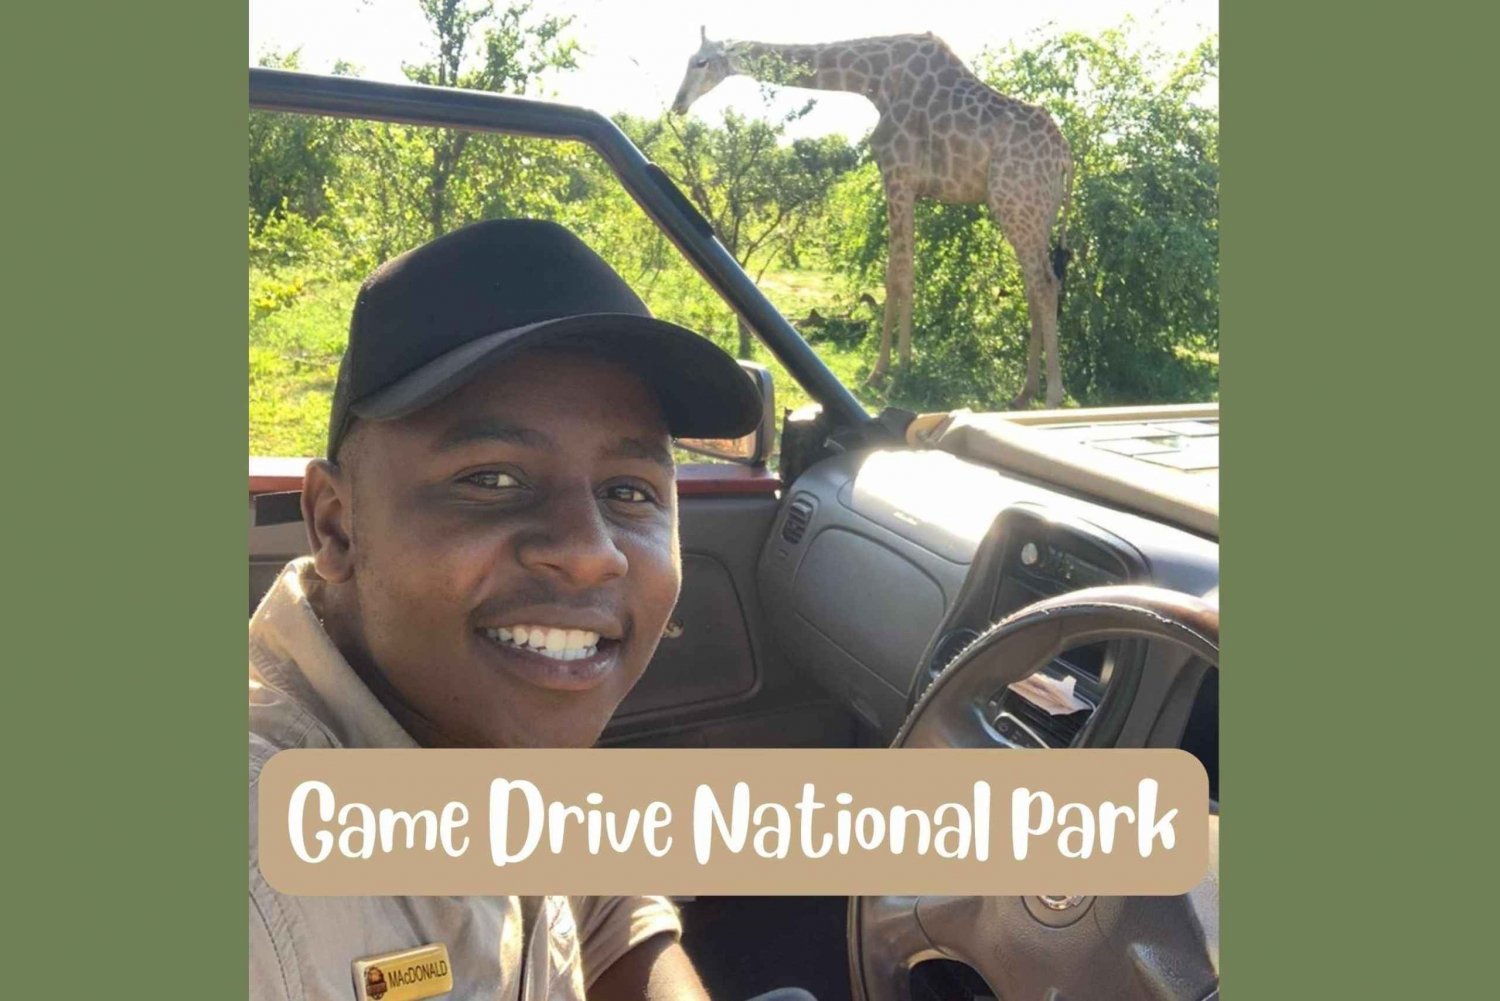 Cascate Vittoria: Parco Nazionale dello Zambesi Game Drive